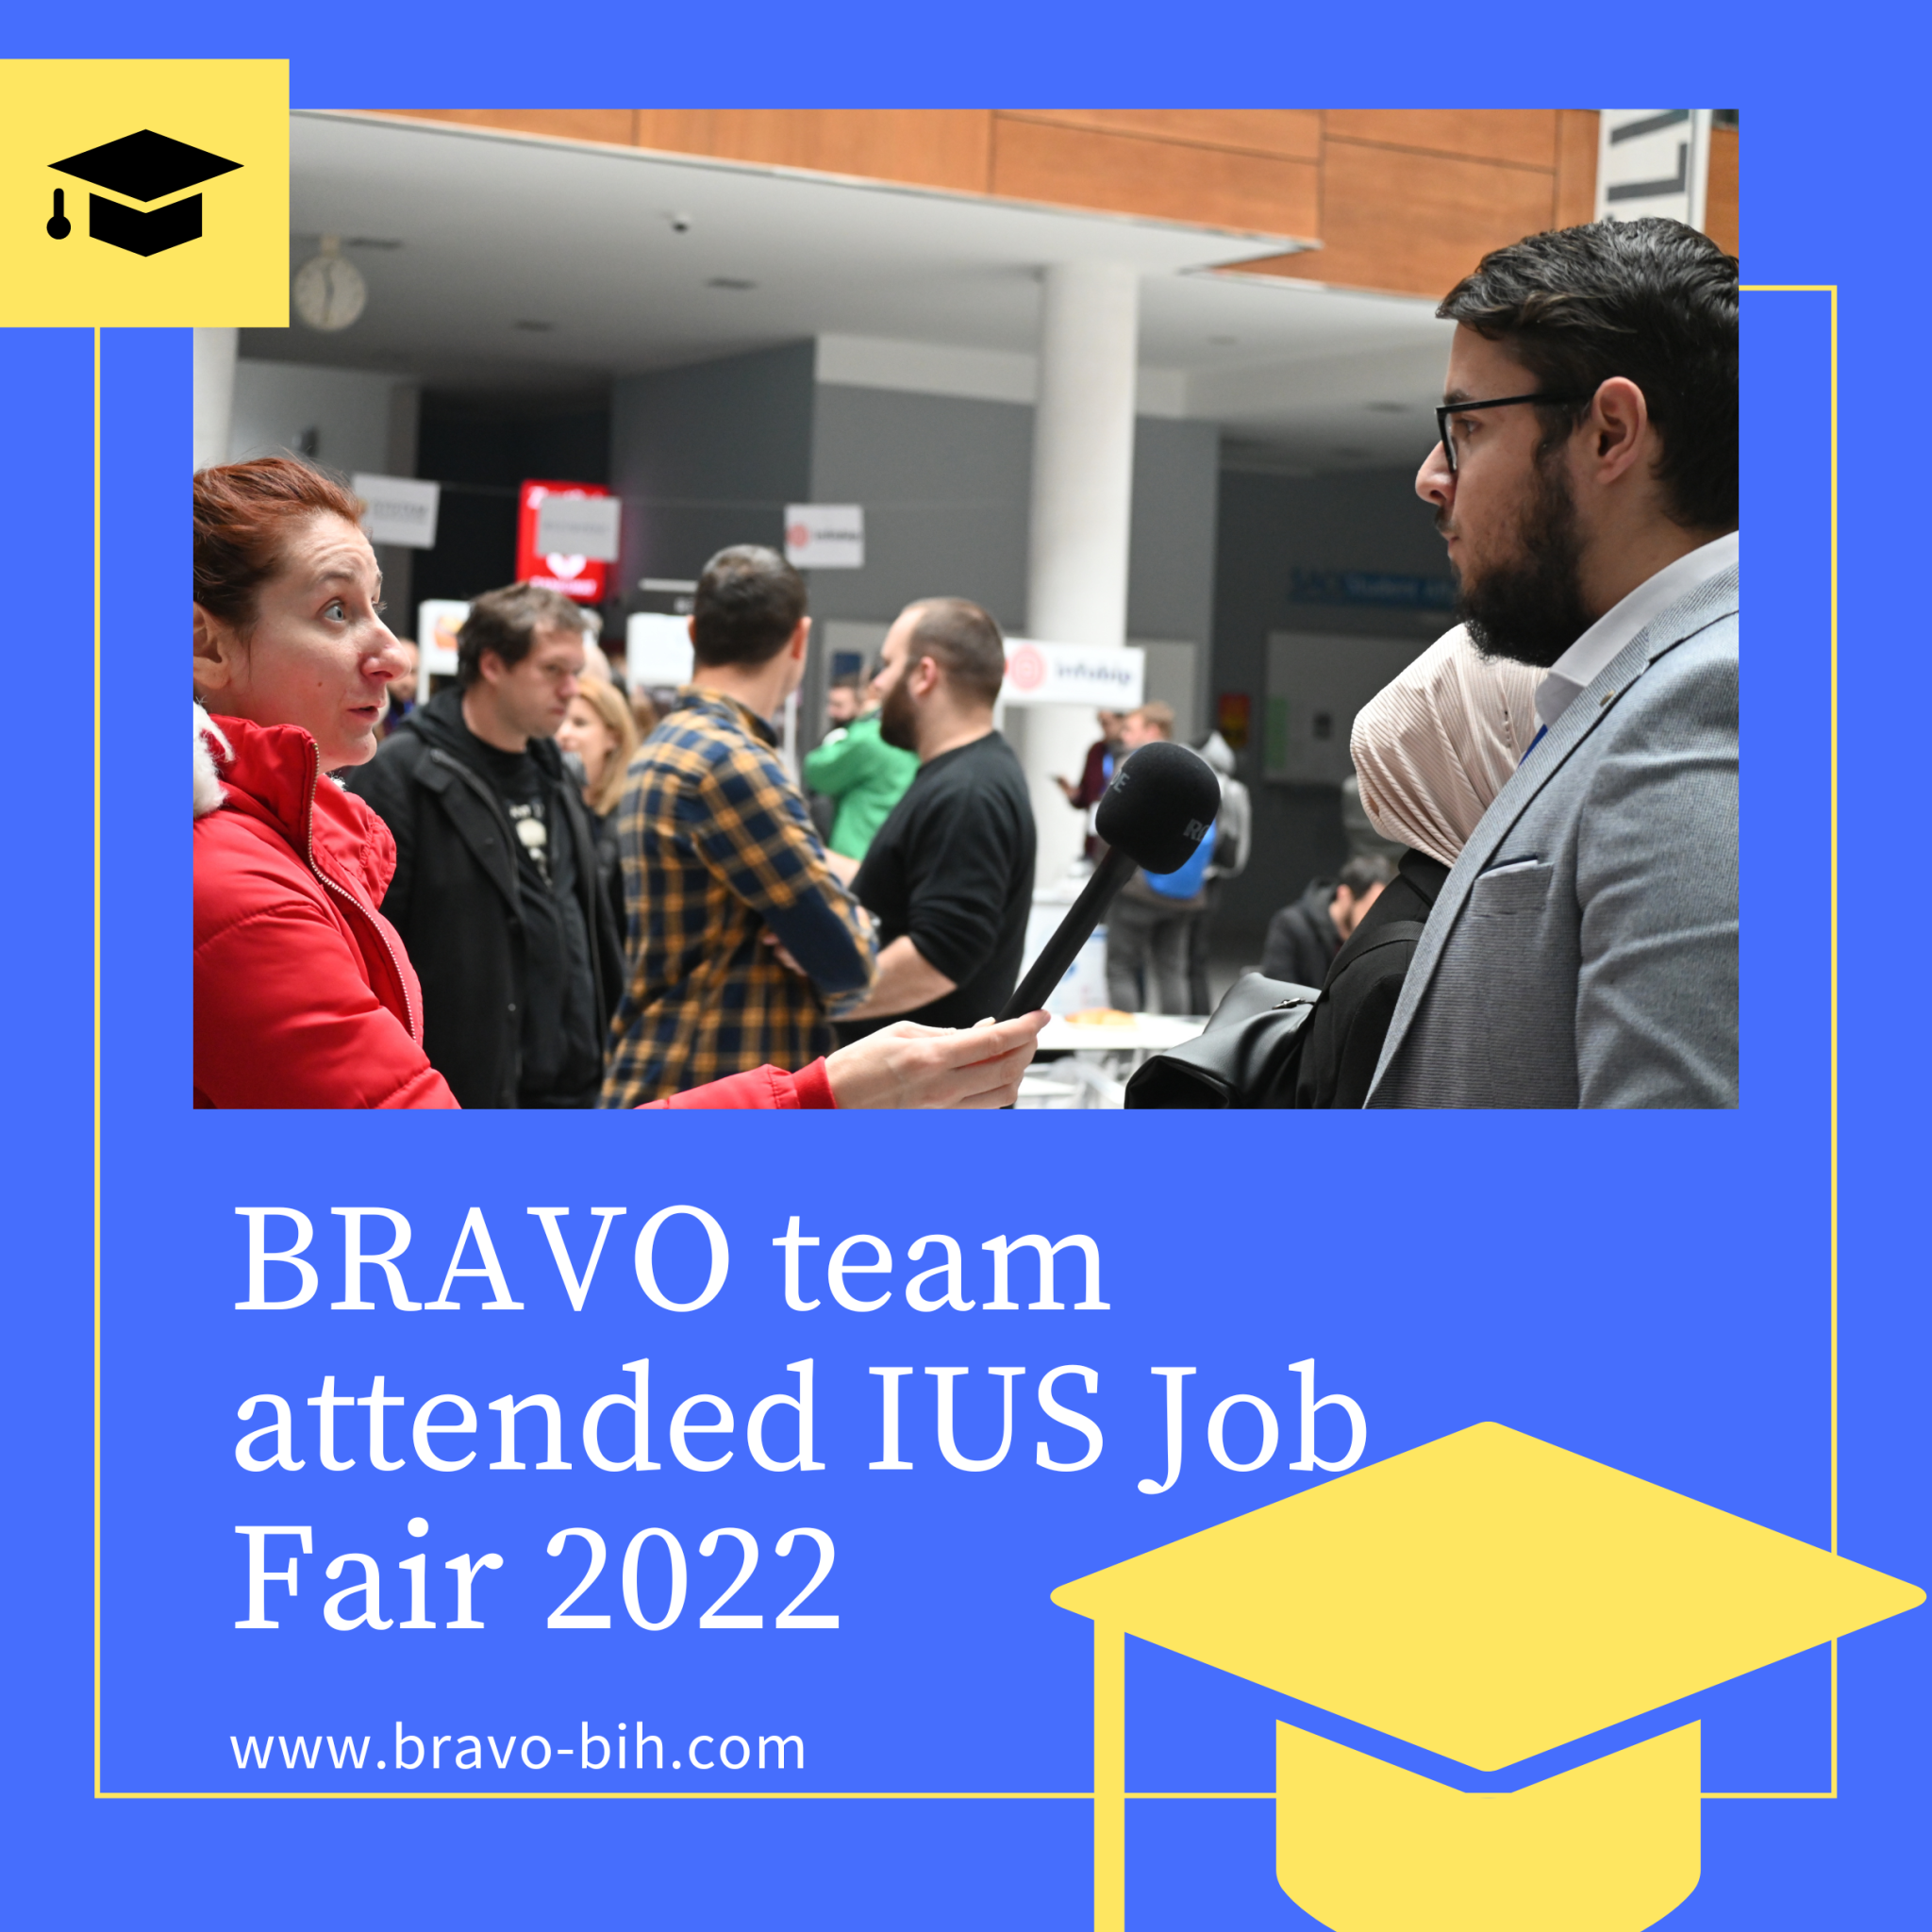 BRAVO team attended IUS Job Fair 2022